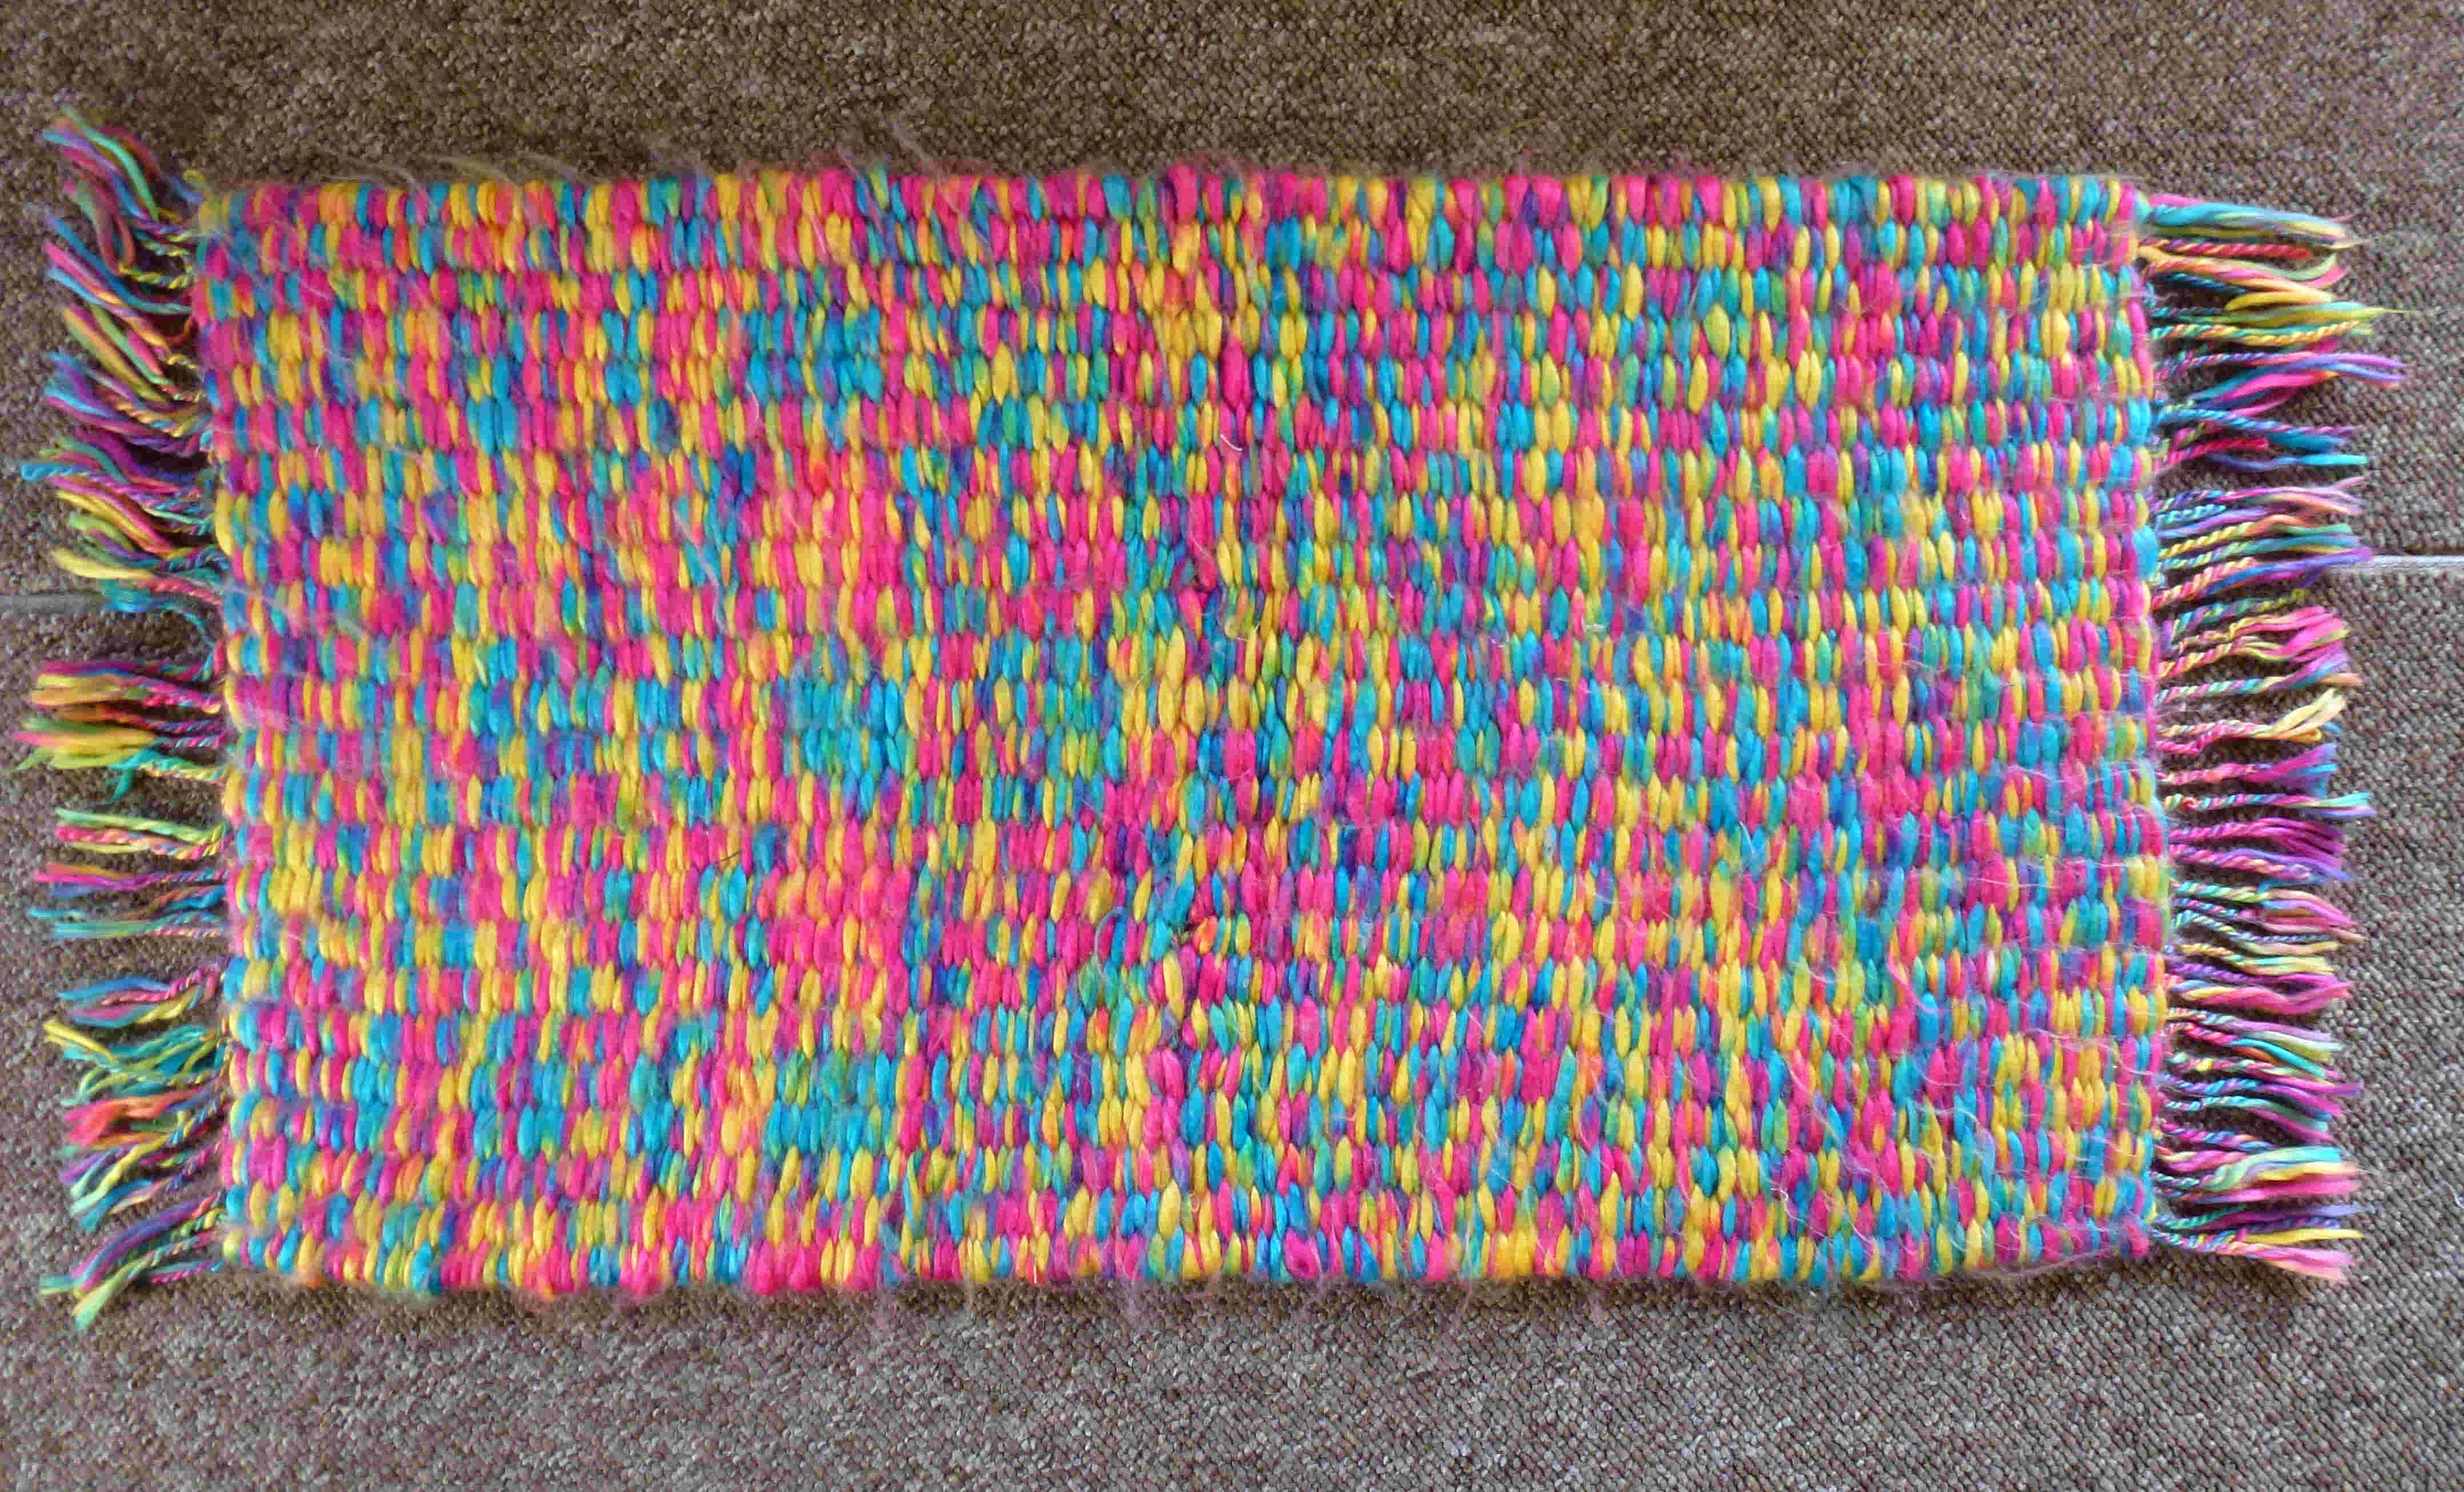 pegloom weaving of a rug